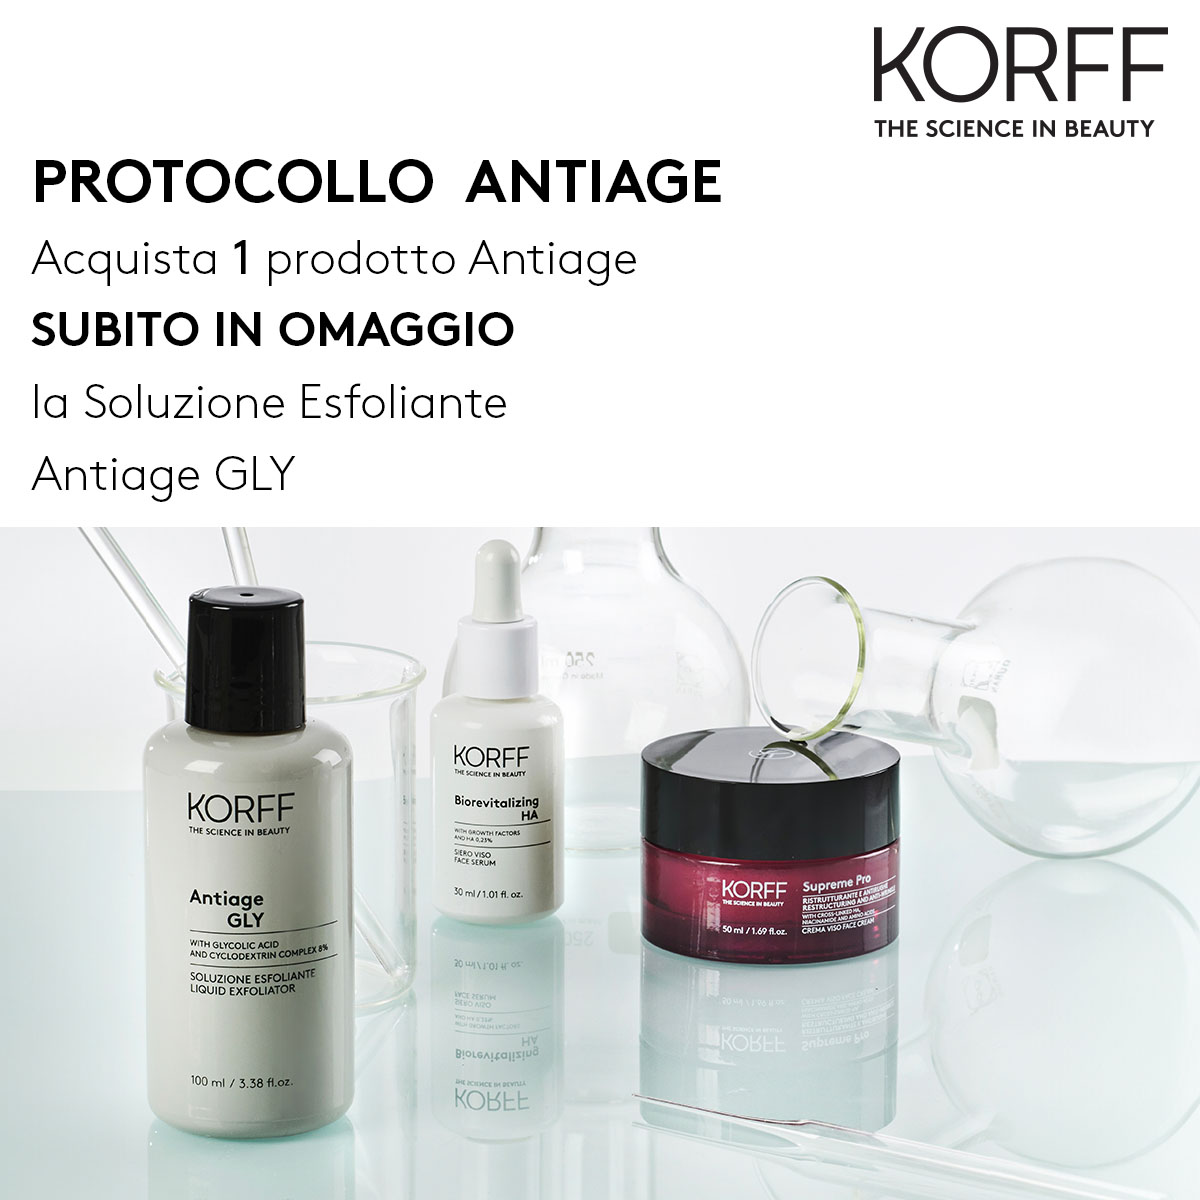 Korff - Protocollo antiage, acquista 1 prodotto anti-età e ricevi subito in omaggio la soluzione esfoliante Antiage GLY!